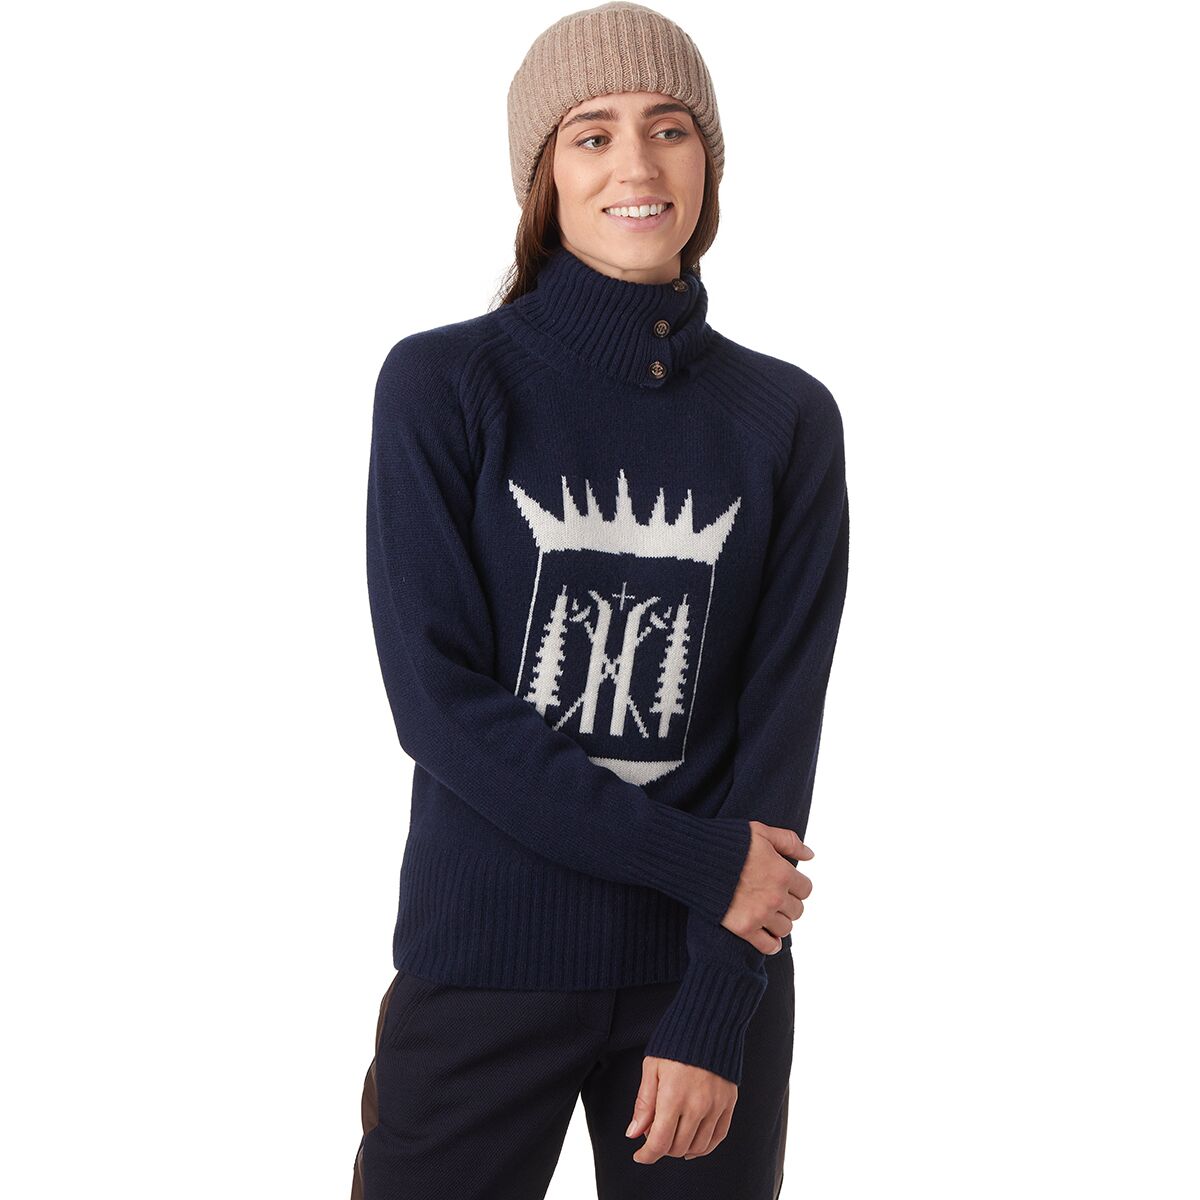 Alps & Meters Ski Race Knit Monarch Sweater - Women's